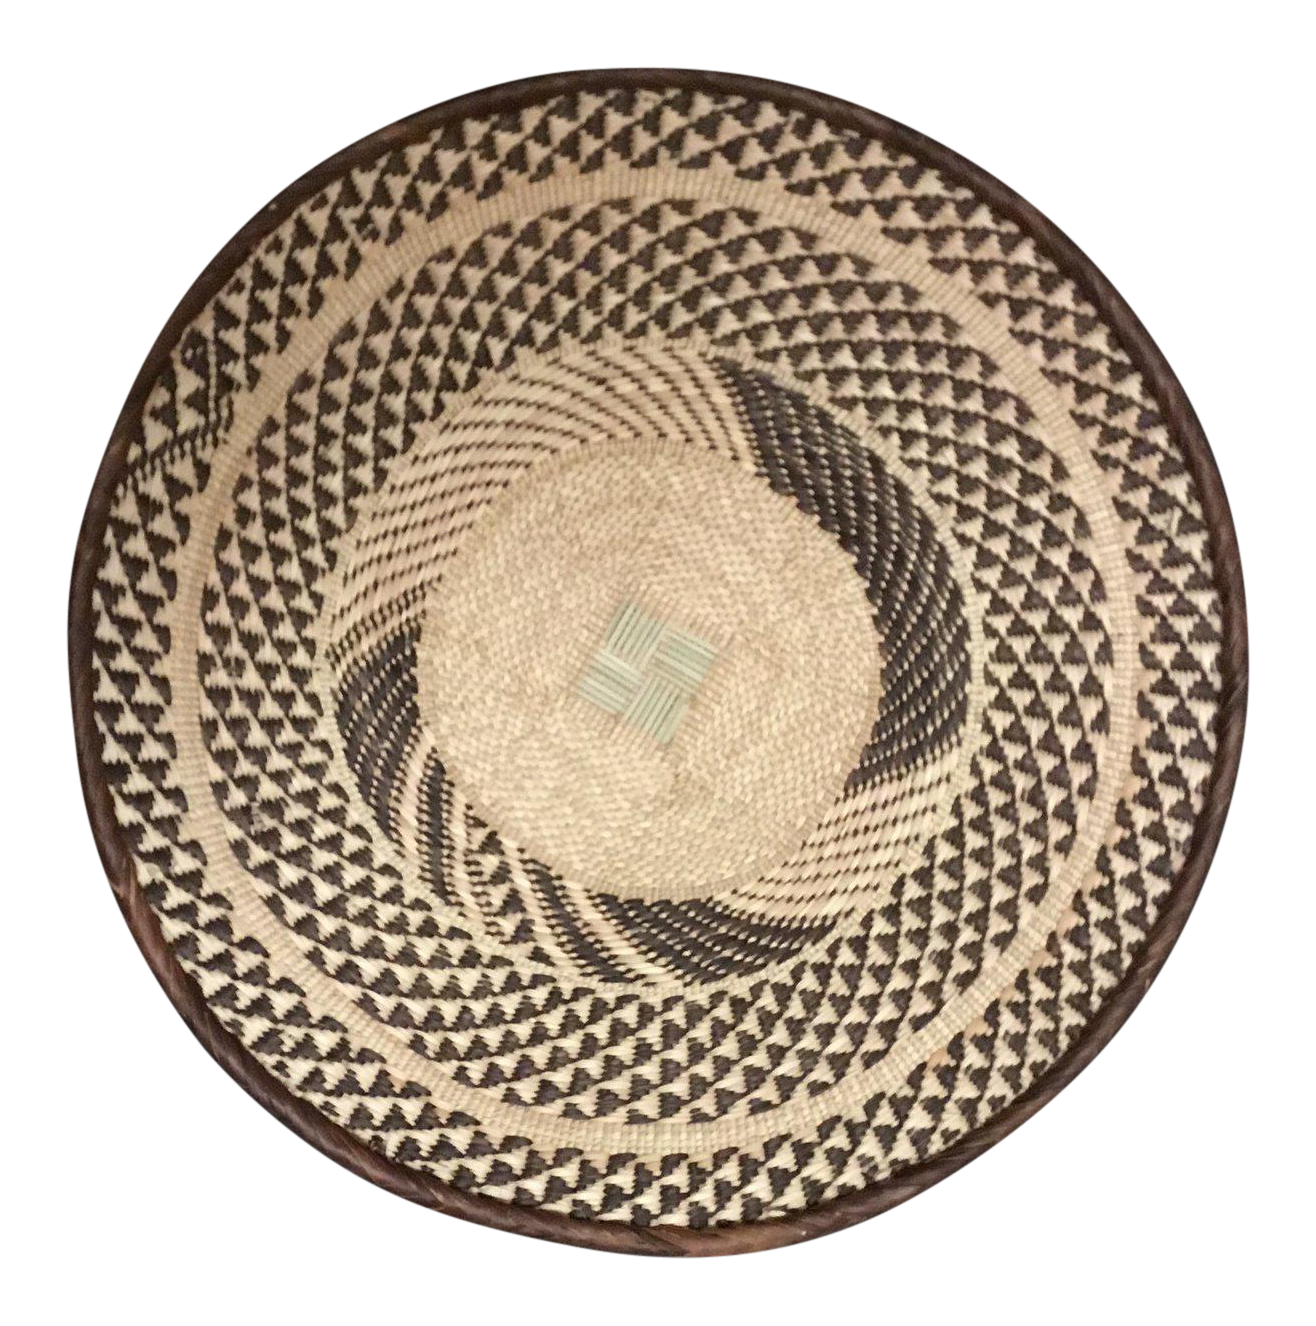 Ethnic Basket PNG Background